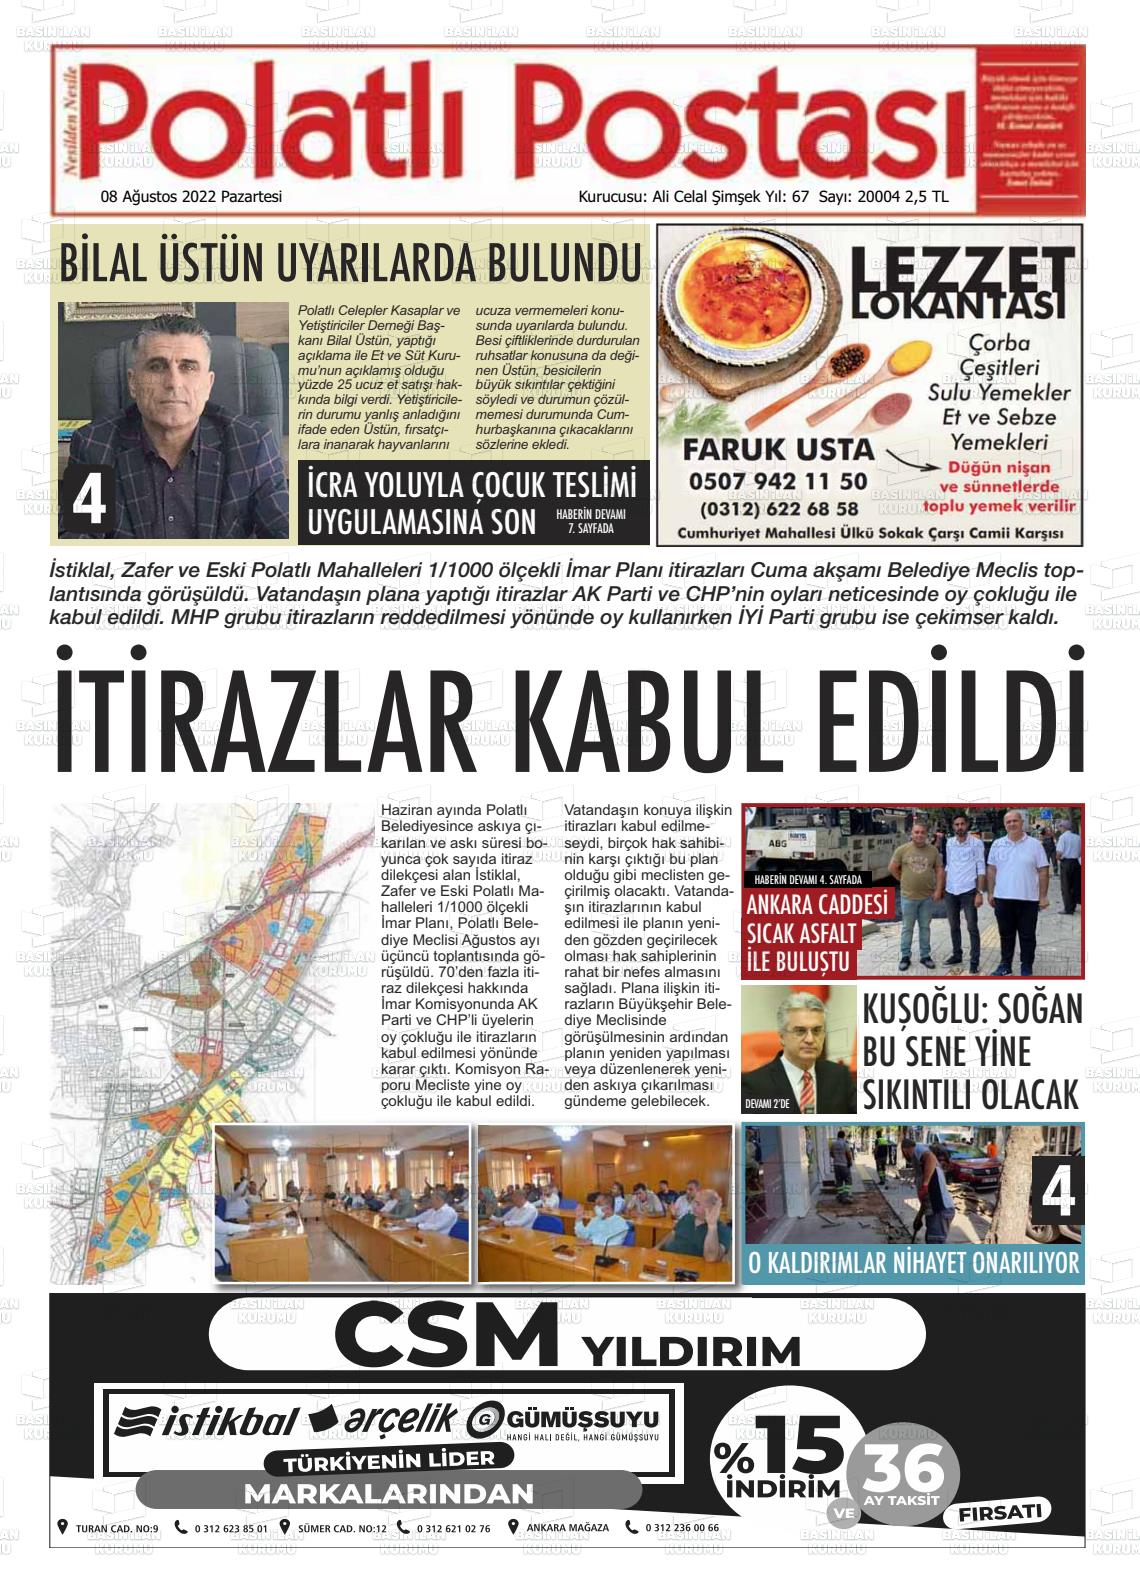 08 Ağustos 2022 Polatlı Postası Gazete Manşeti